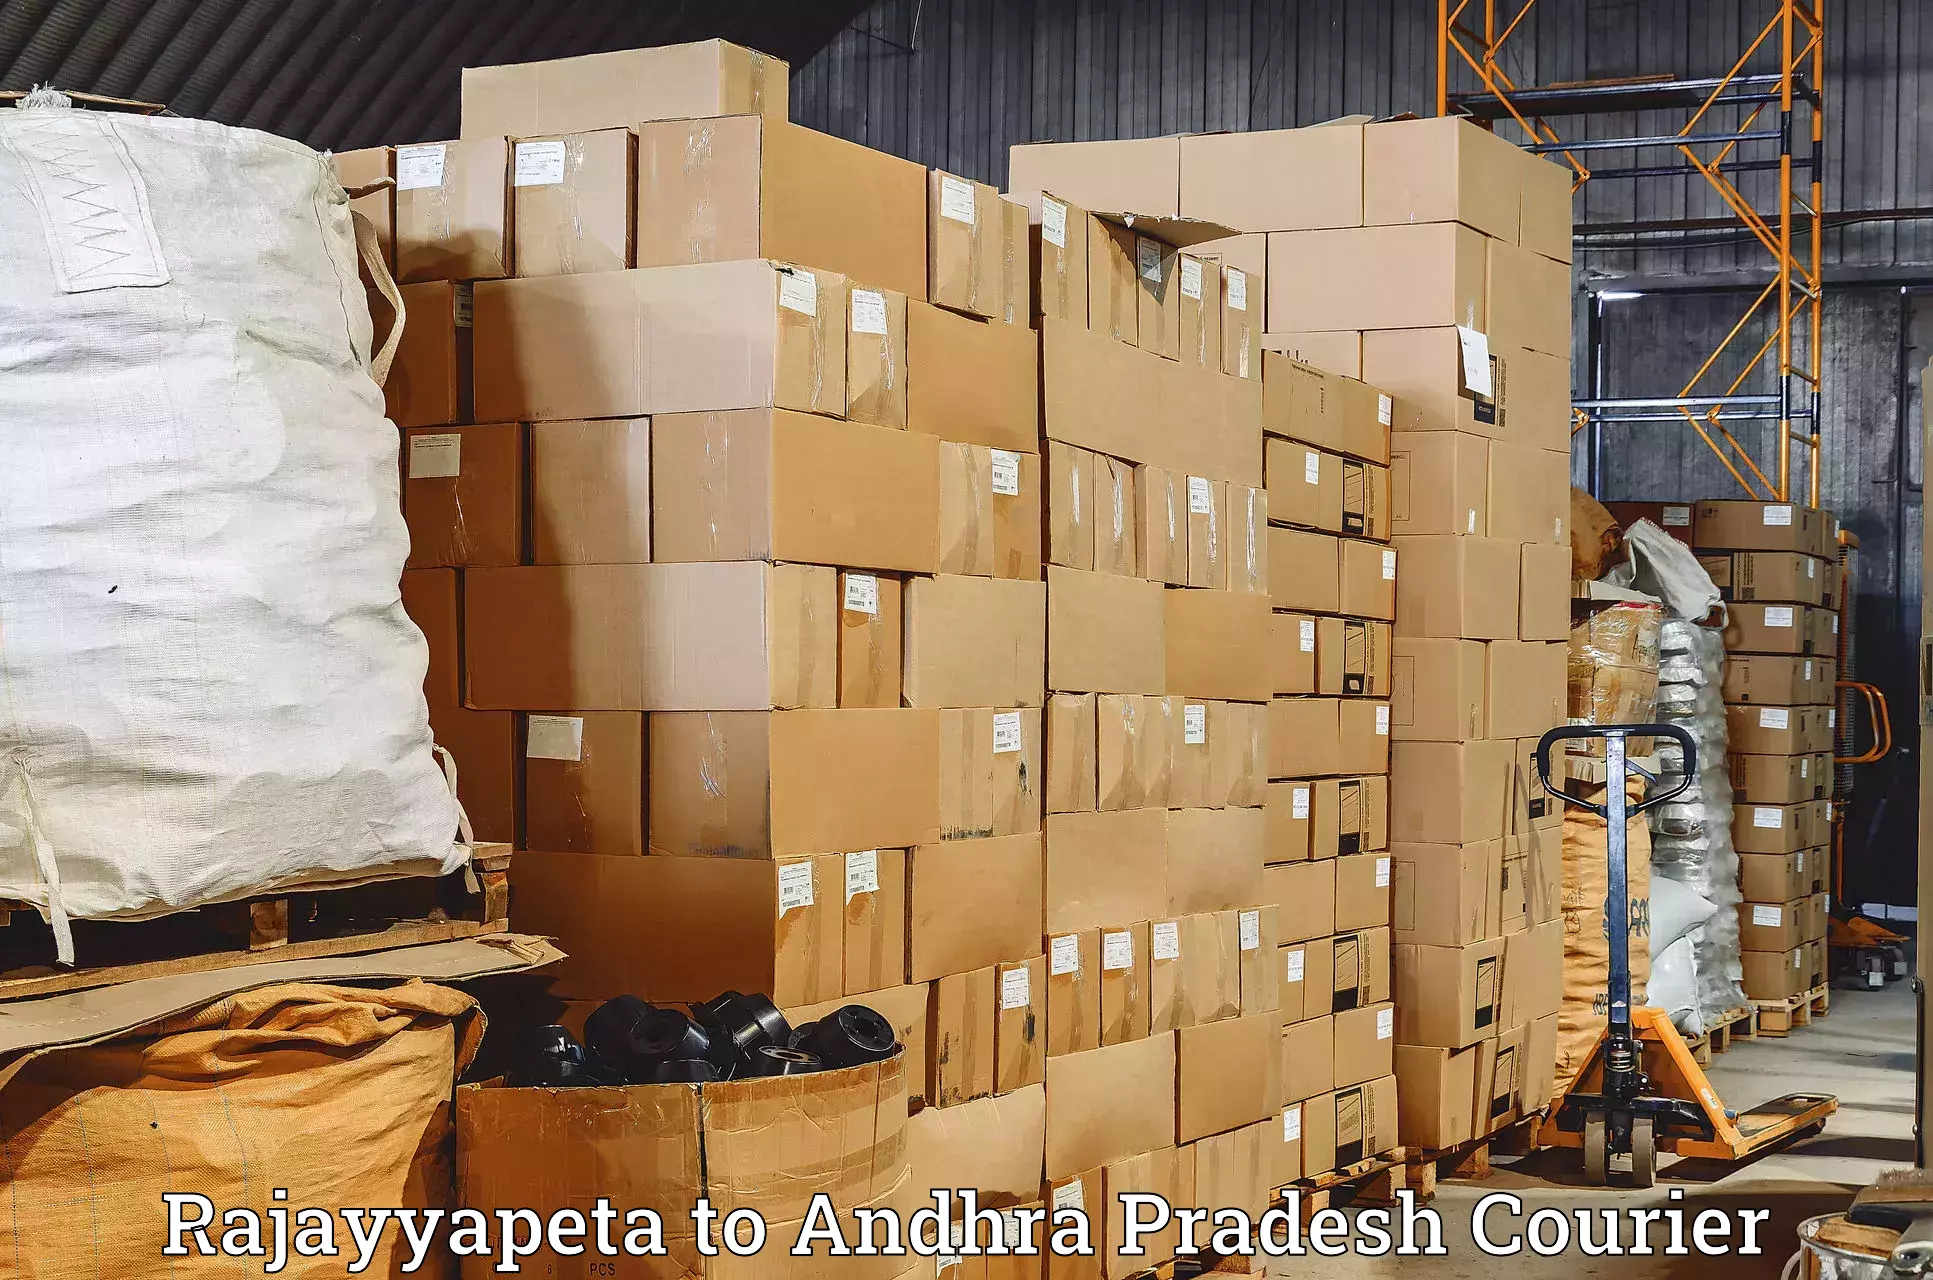 Global shipping networks Rajayyapeta to Sompeta